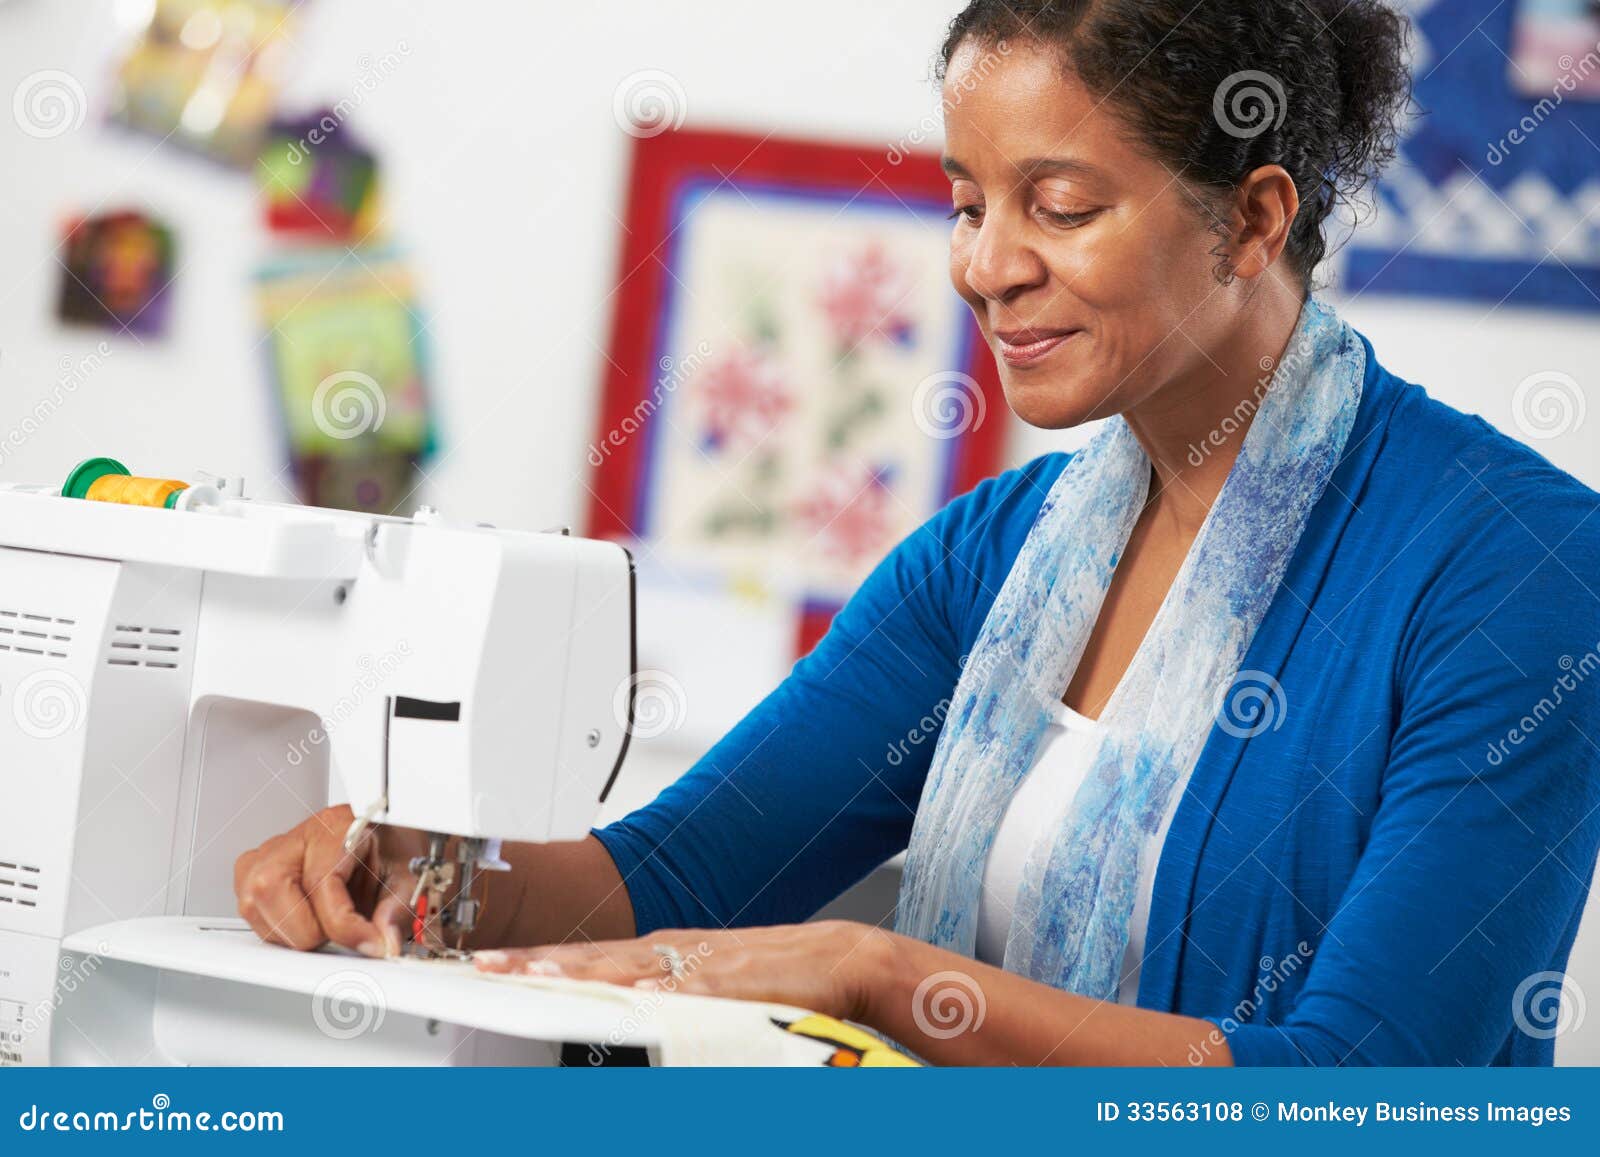 Foto Una mujer usando una máquina de coser para coser ropa – Imagen  Kirguistán gratis en Unsplash